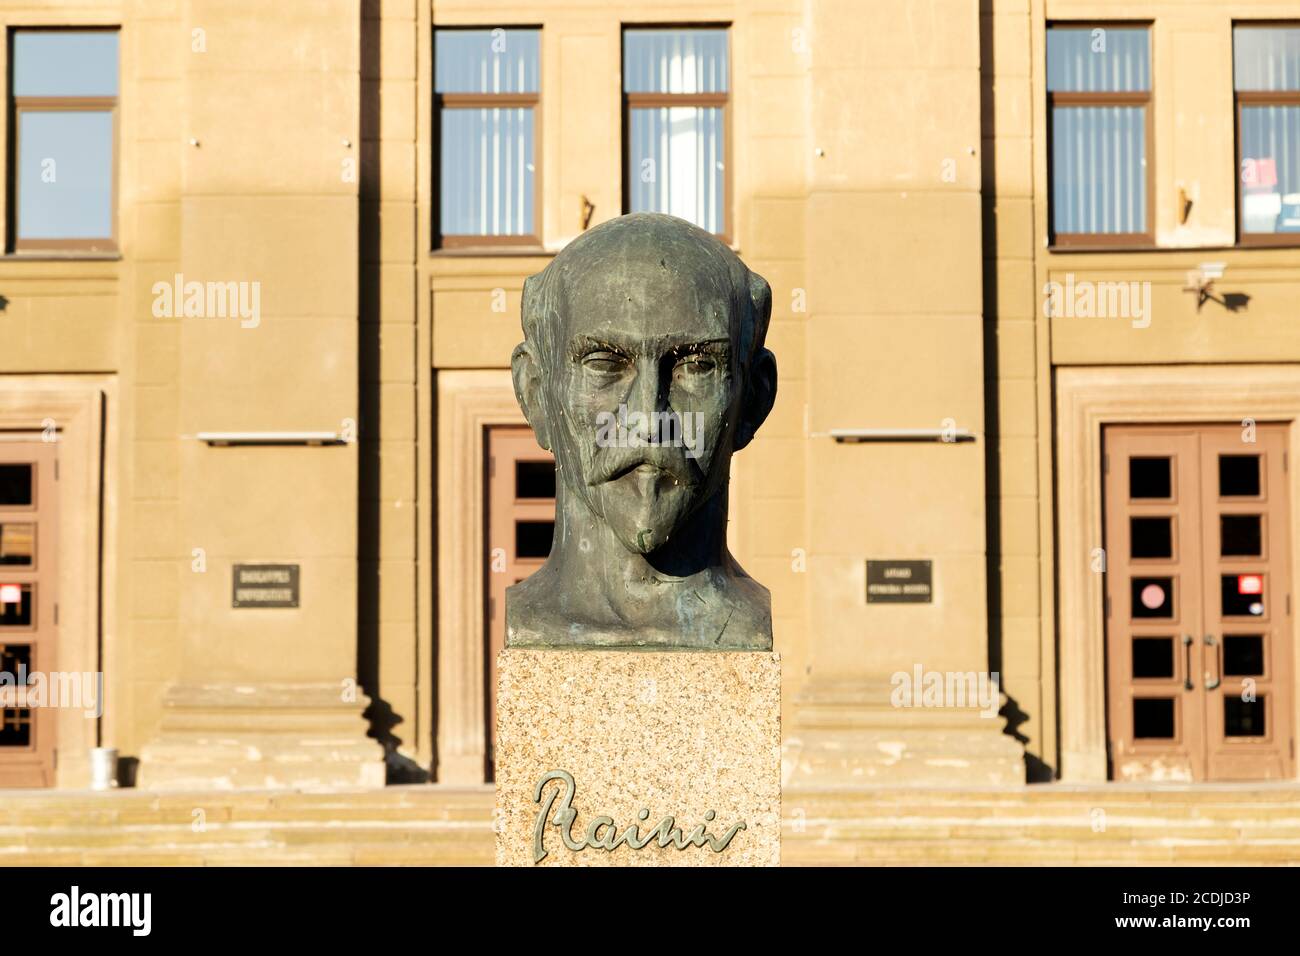 Estatua de Rainis, un célebre poeta de Letonia, en las afueras de la Universidad de Daugavpils en Daugavpils, Letonia. Rainis era un seudónimo de Jānis Pliekšāns (1865-1 Foto de stock